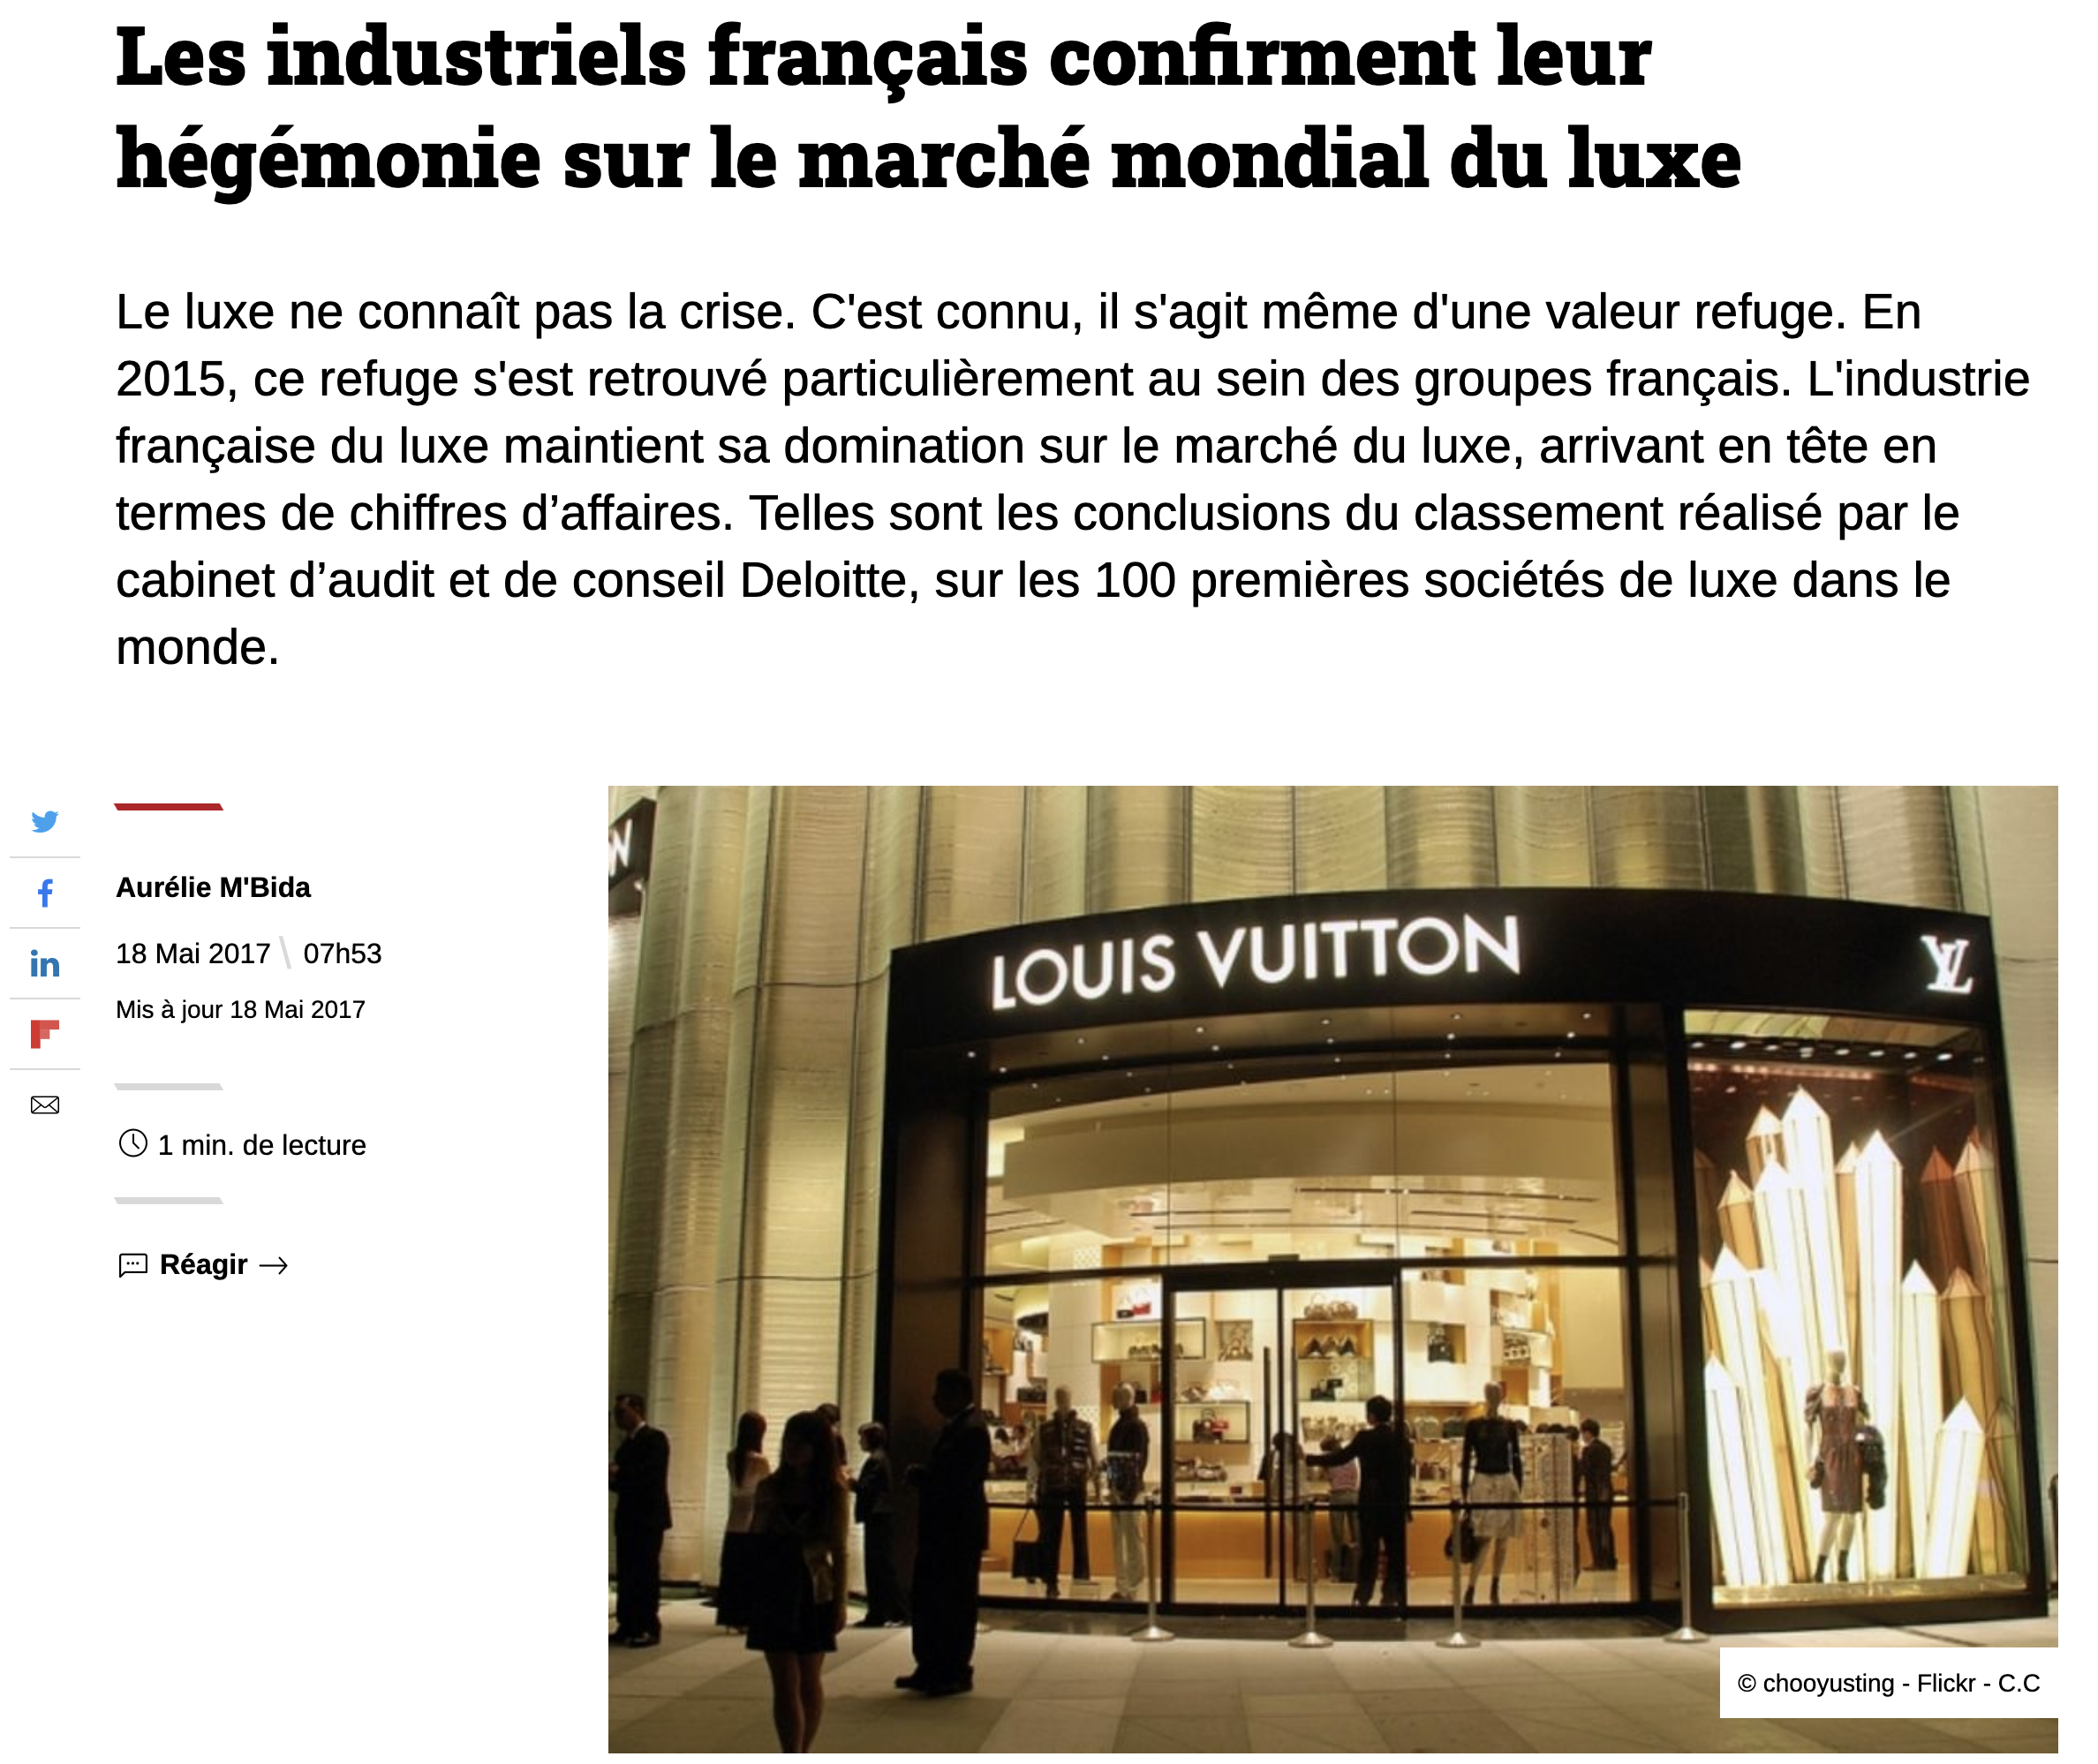 Le comité Colbert peut être fier, son objectif originel : faire de l’industrie du luxe Française une référence est aujourd’hui réalisé. (Source : usinenouvelle)